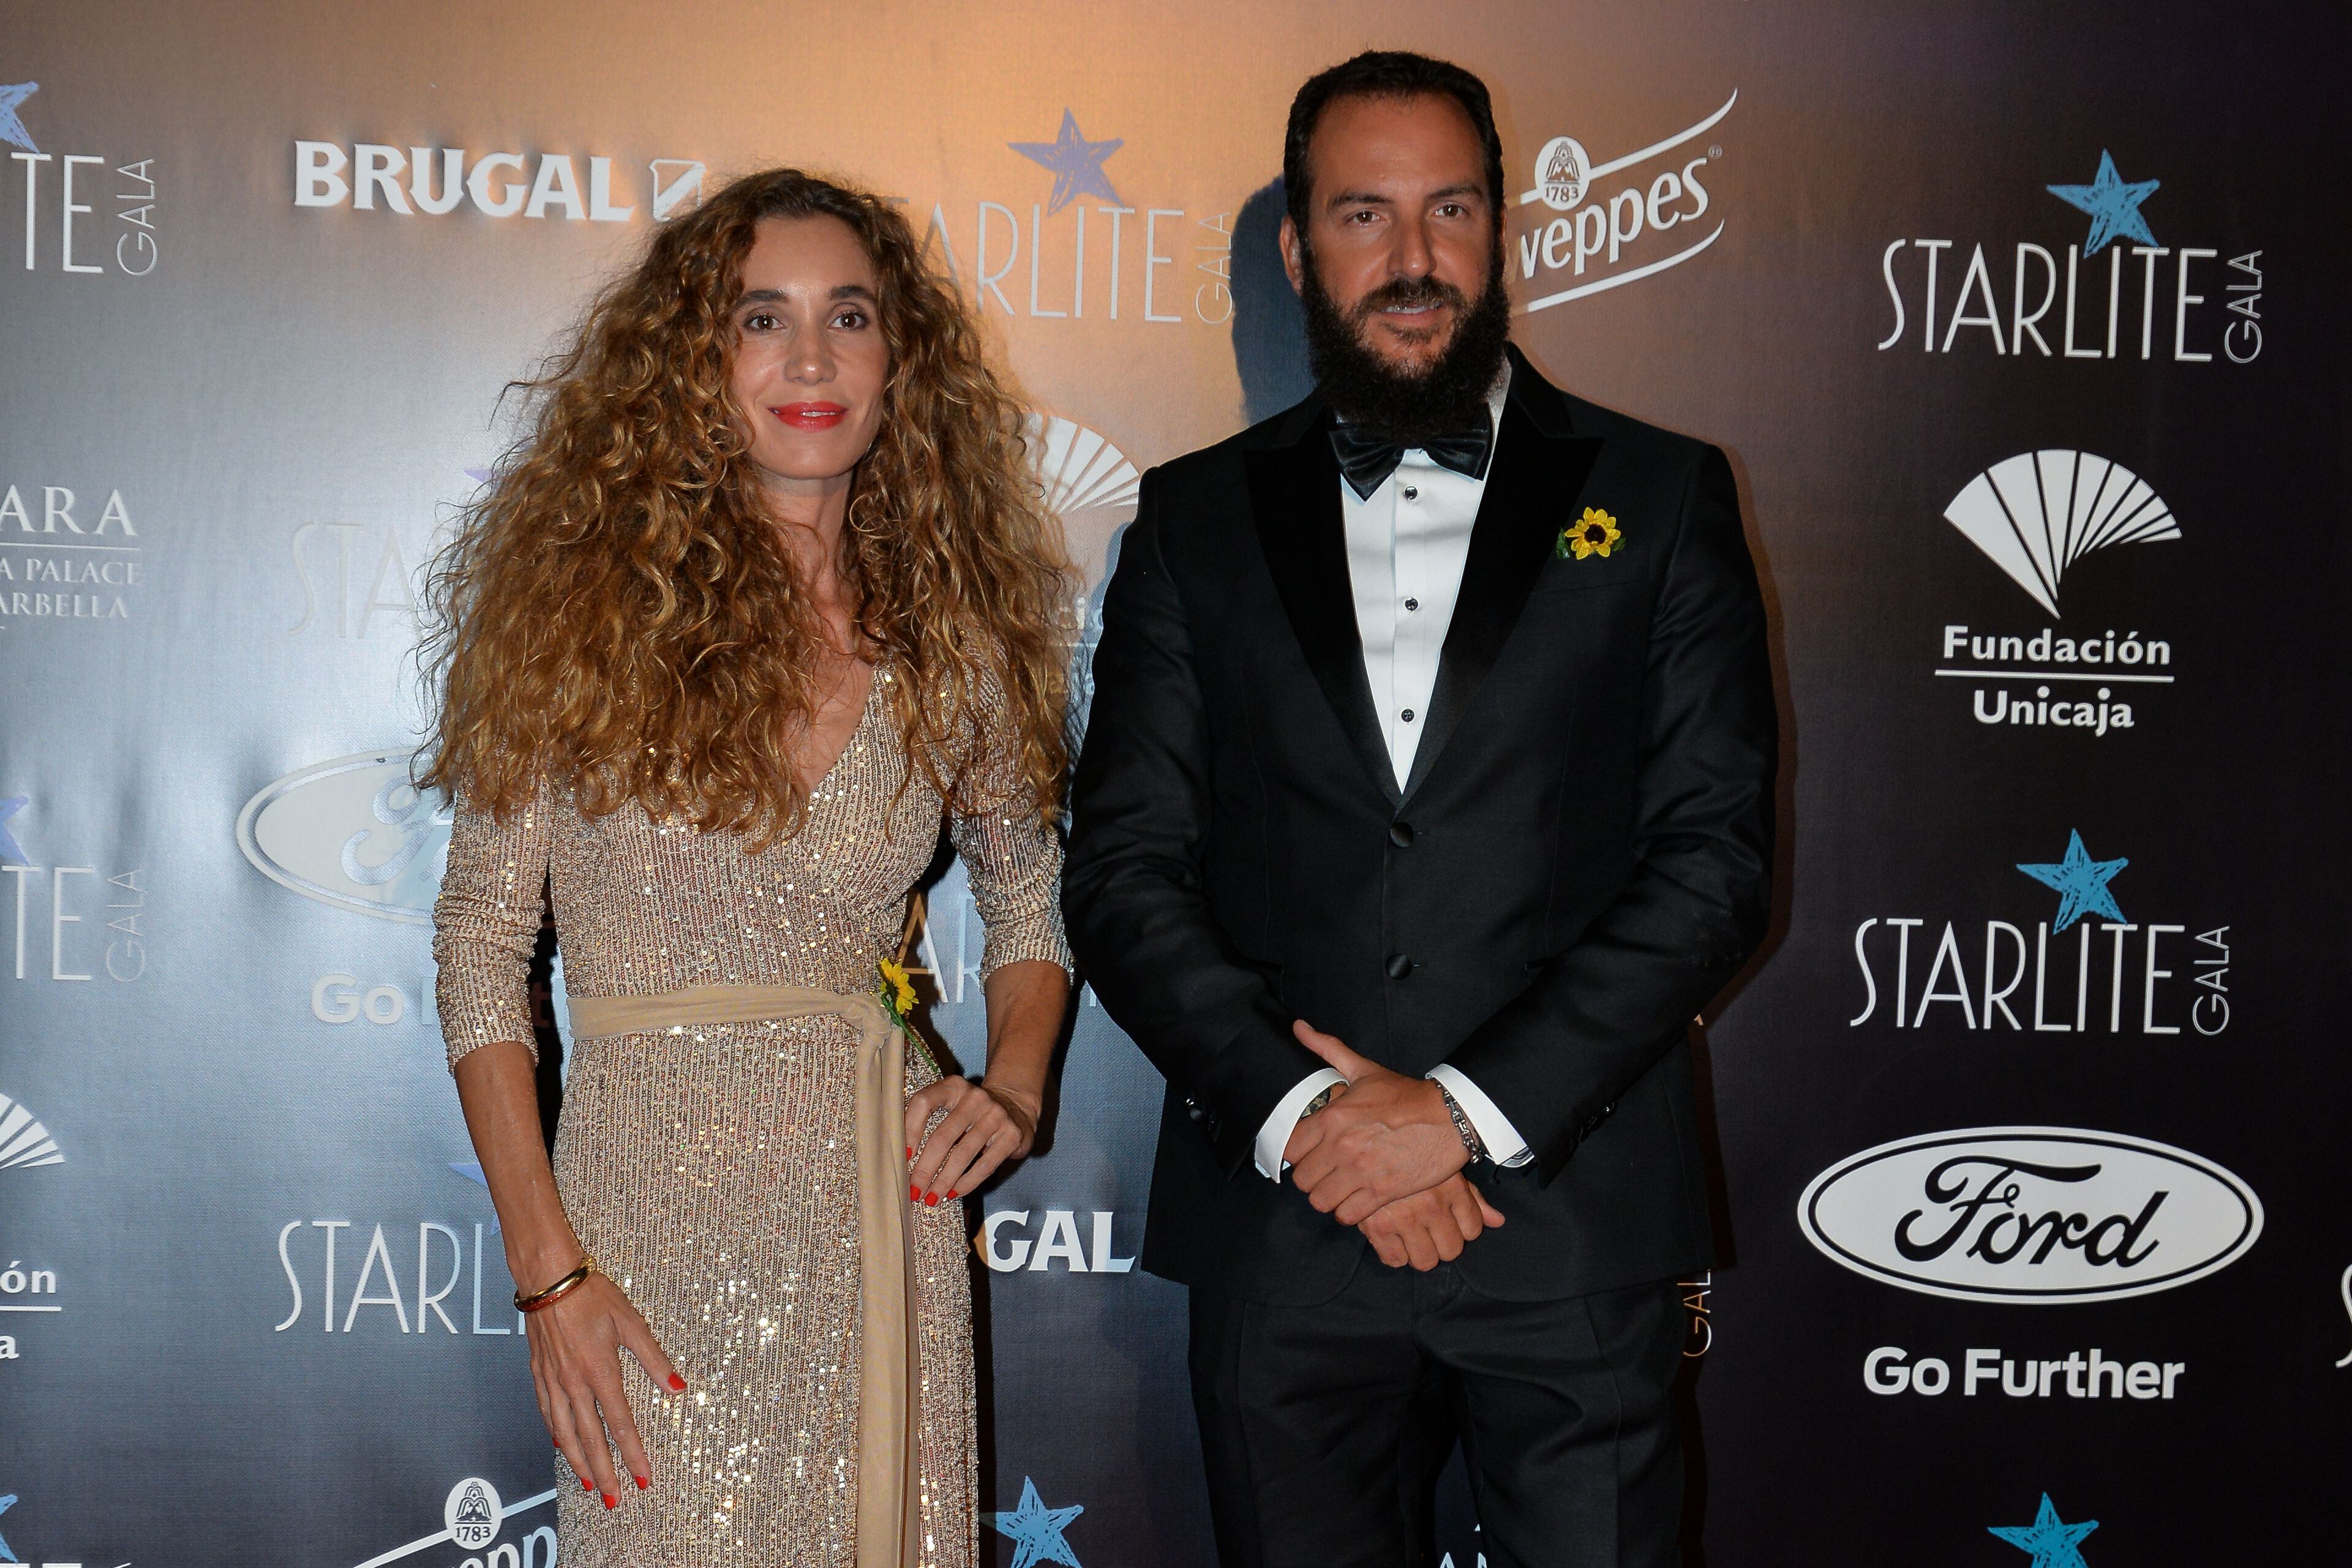 Borja Thyssen y Blanca Cuesta en el Starlite Festival de Marbella el 11 de agosto de 2019.